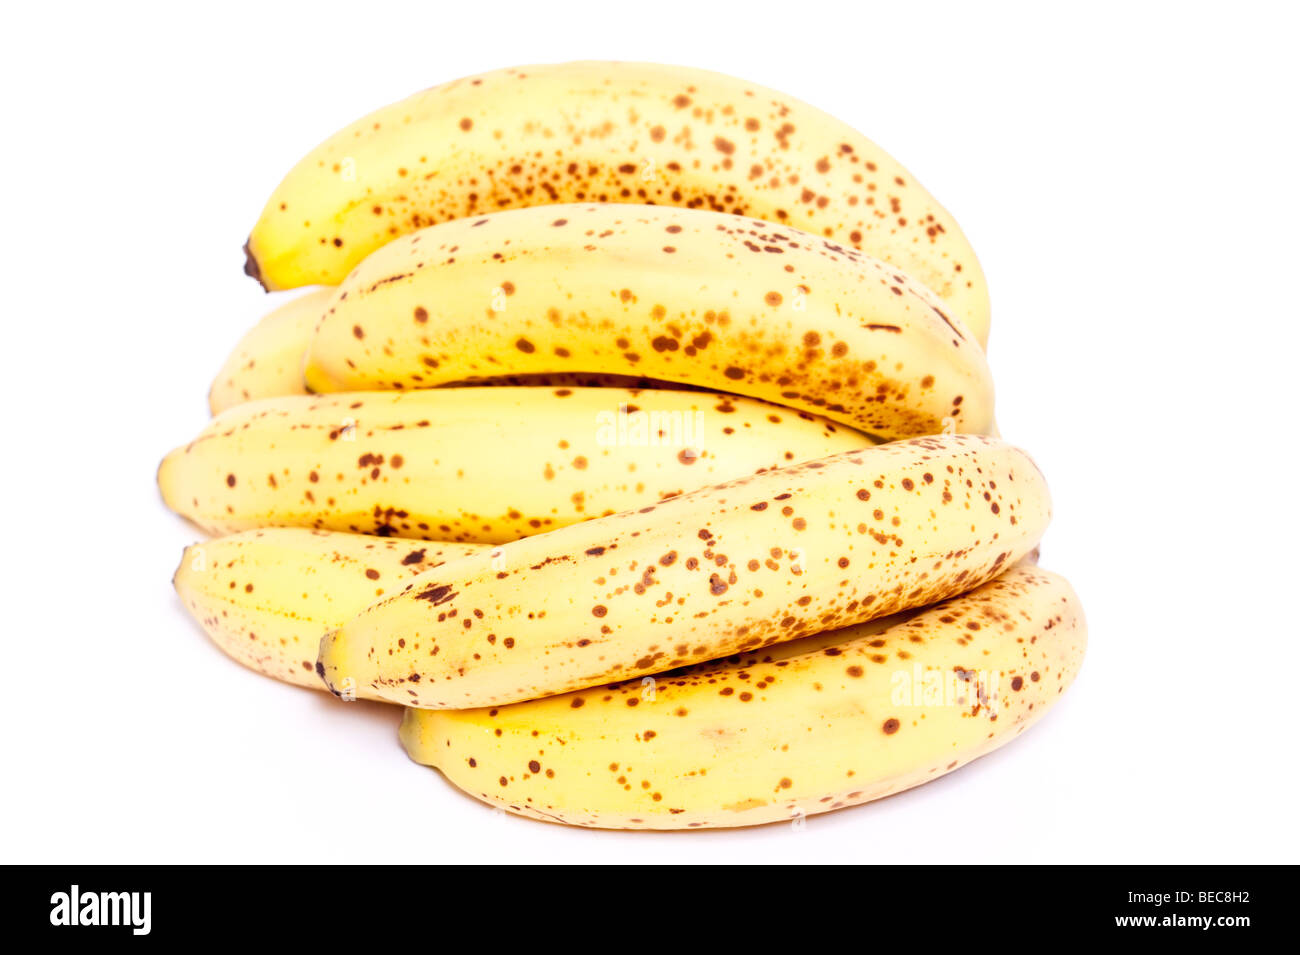 Ein Bündel Bananen mit Bräunung der Haut auf weißem Hintergrund Stockfoto